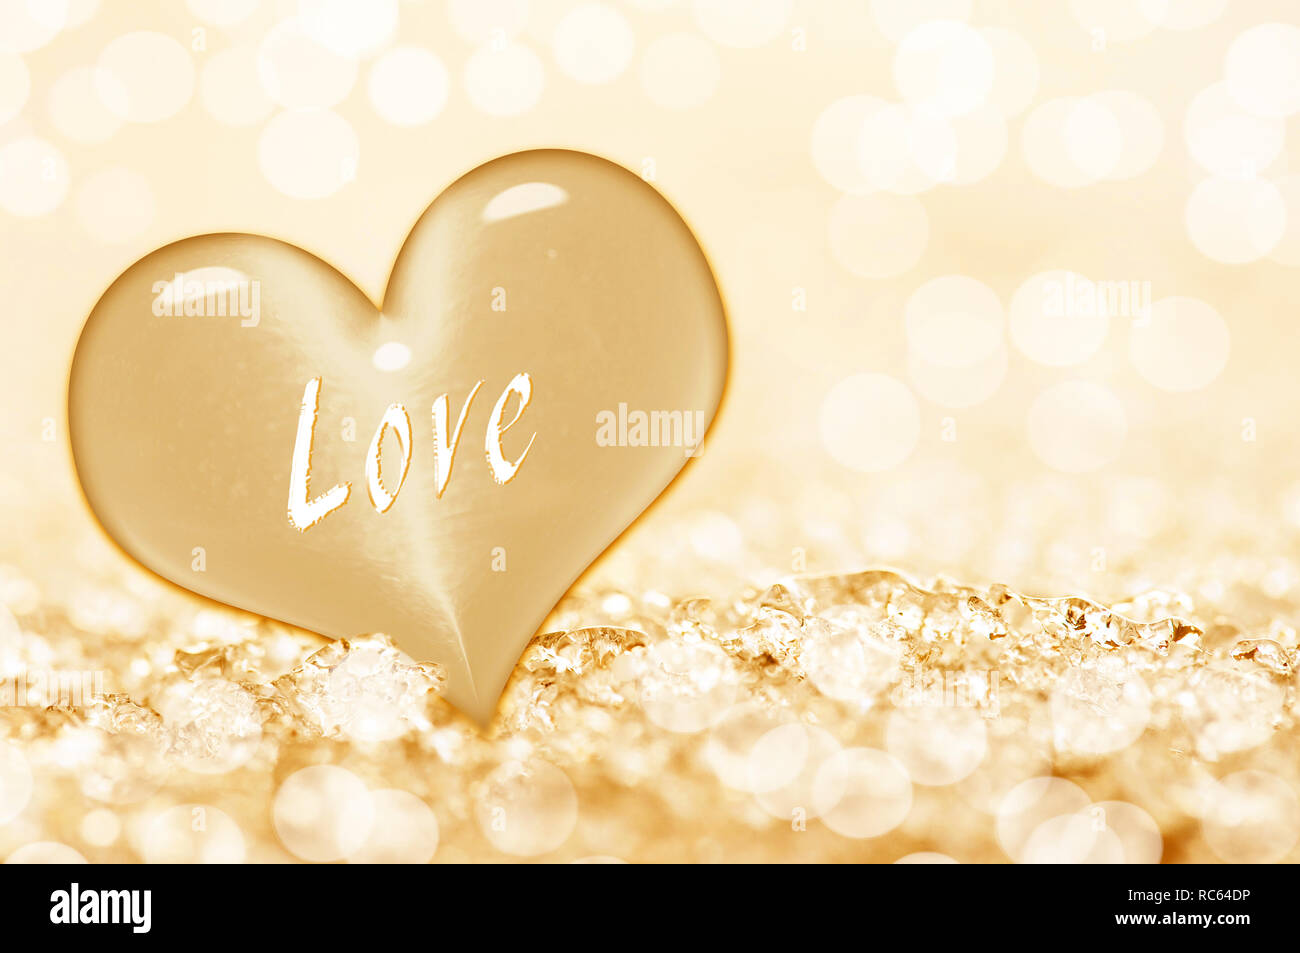 Mot amour écrit sur un coeur en or, fond brillant Banque D'Images